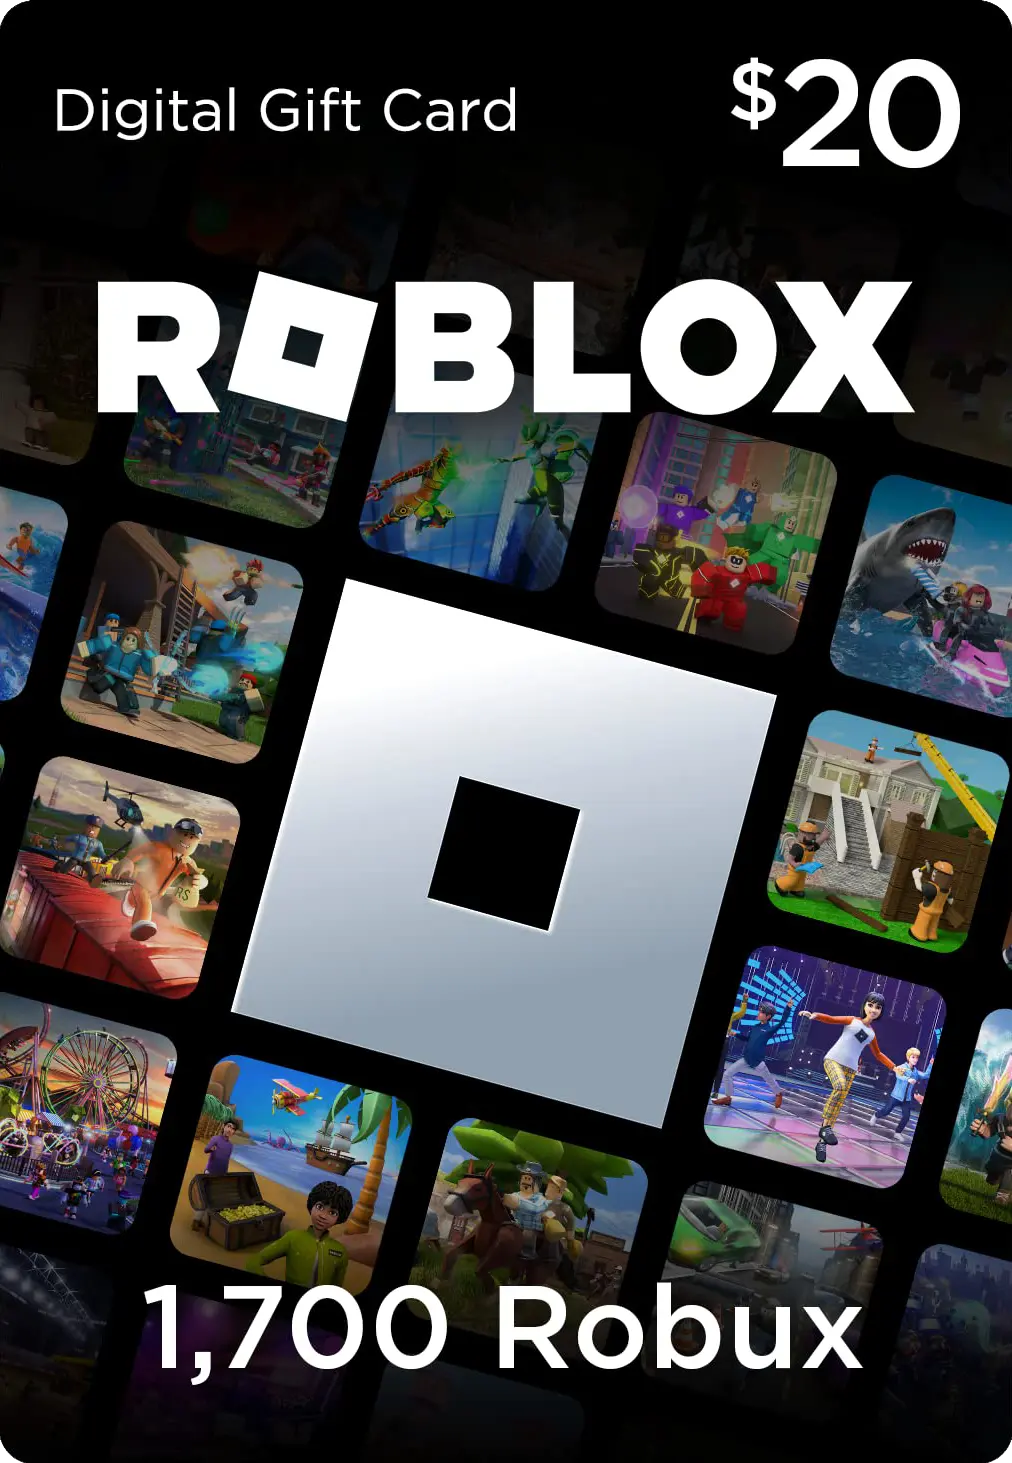 Cùng mua gift card Roblox 20$ (Mỹ) để có ngay 1700 Robux và mã số kỹ thuật số. Sẵn sàng trải nghiệm sự đa dạng của thế giới giải trí vô tận trên Roblox không?